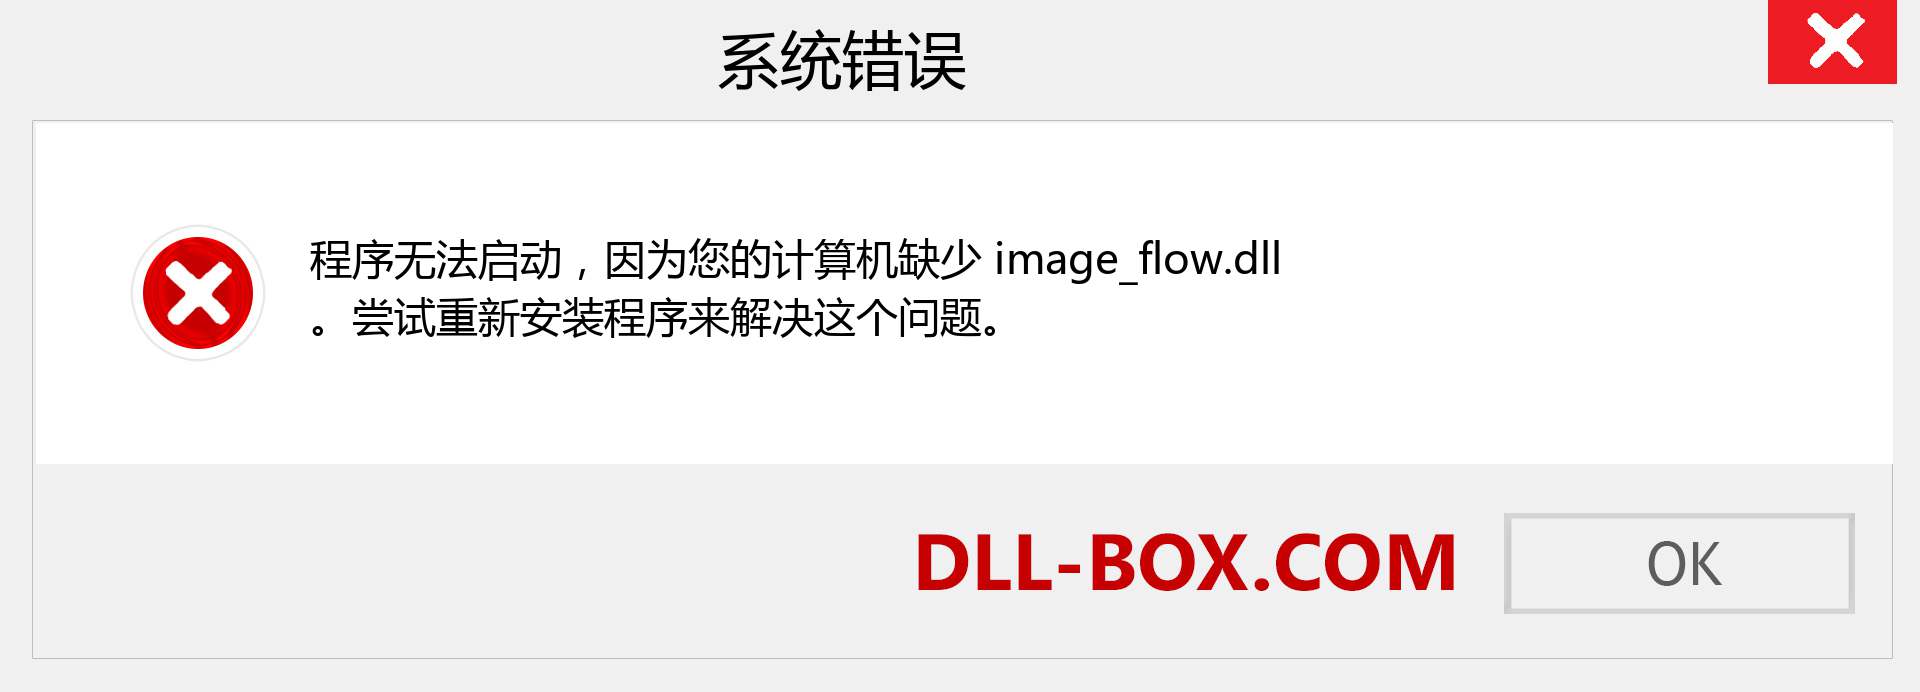 image_flow.dll 文件丢失？。 适用于 Windows 7、8、10 的下载 - 修复 Windows、照片、图像上的 image_flow dll 丢失错误